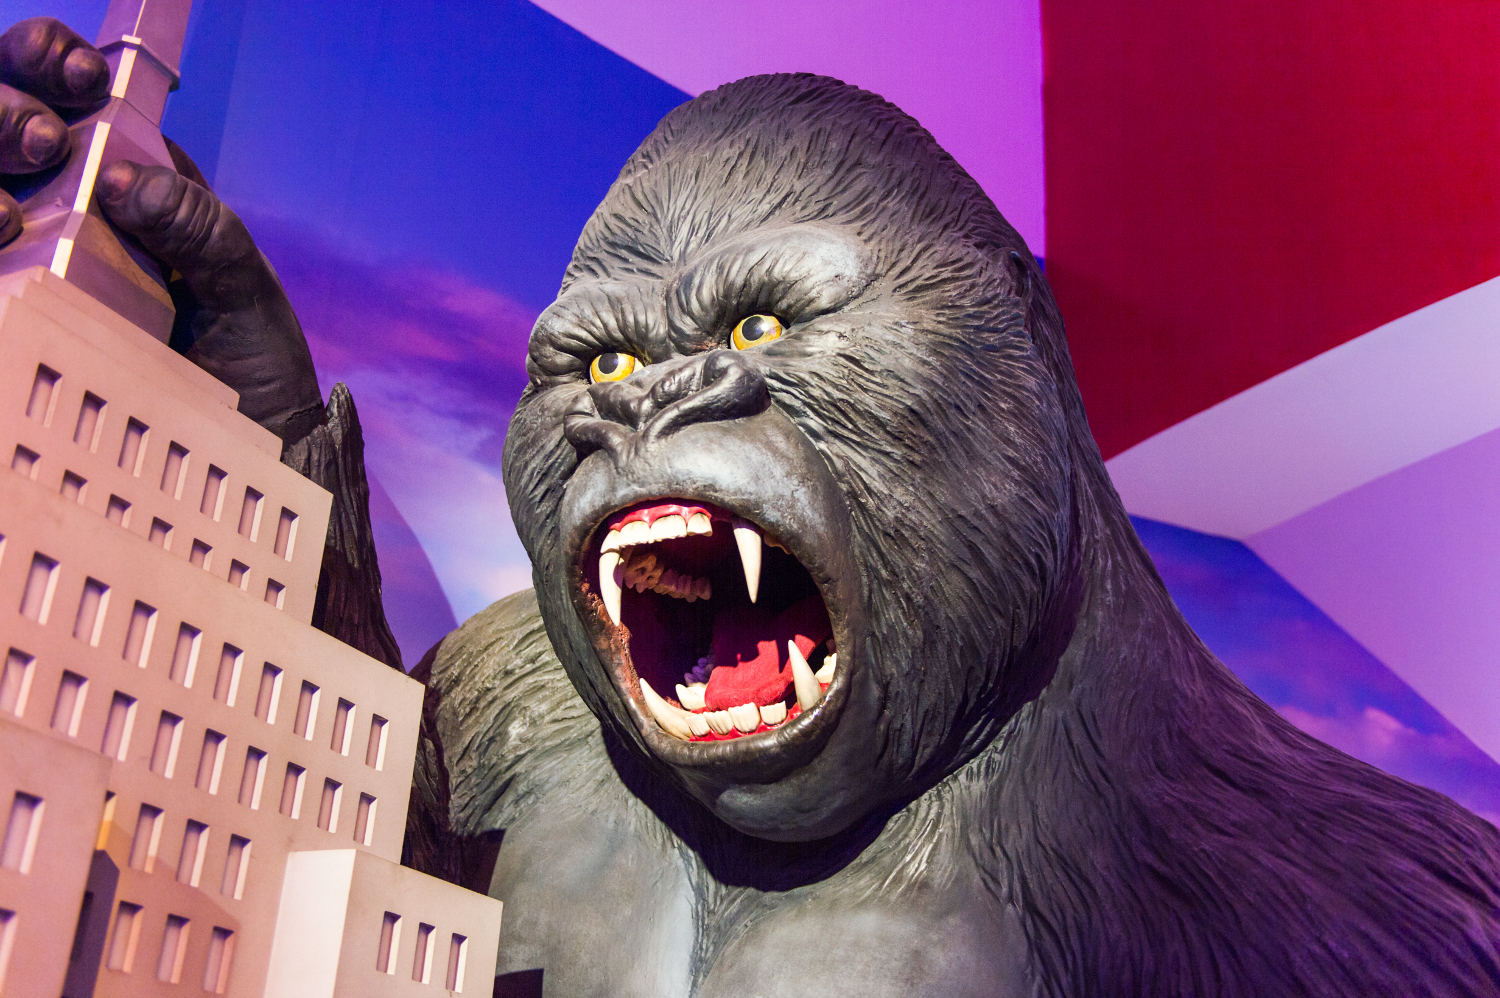 Les fossiles du gigantopithèque ont notamment alimenté le mythe de King Kong, qui a fait tant de mal à l'image du gorille, un herbivore pacifique. © Anton_Ivanov, Shutterstock.com